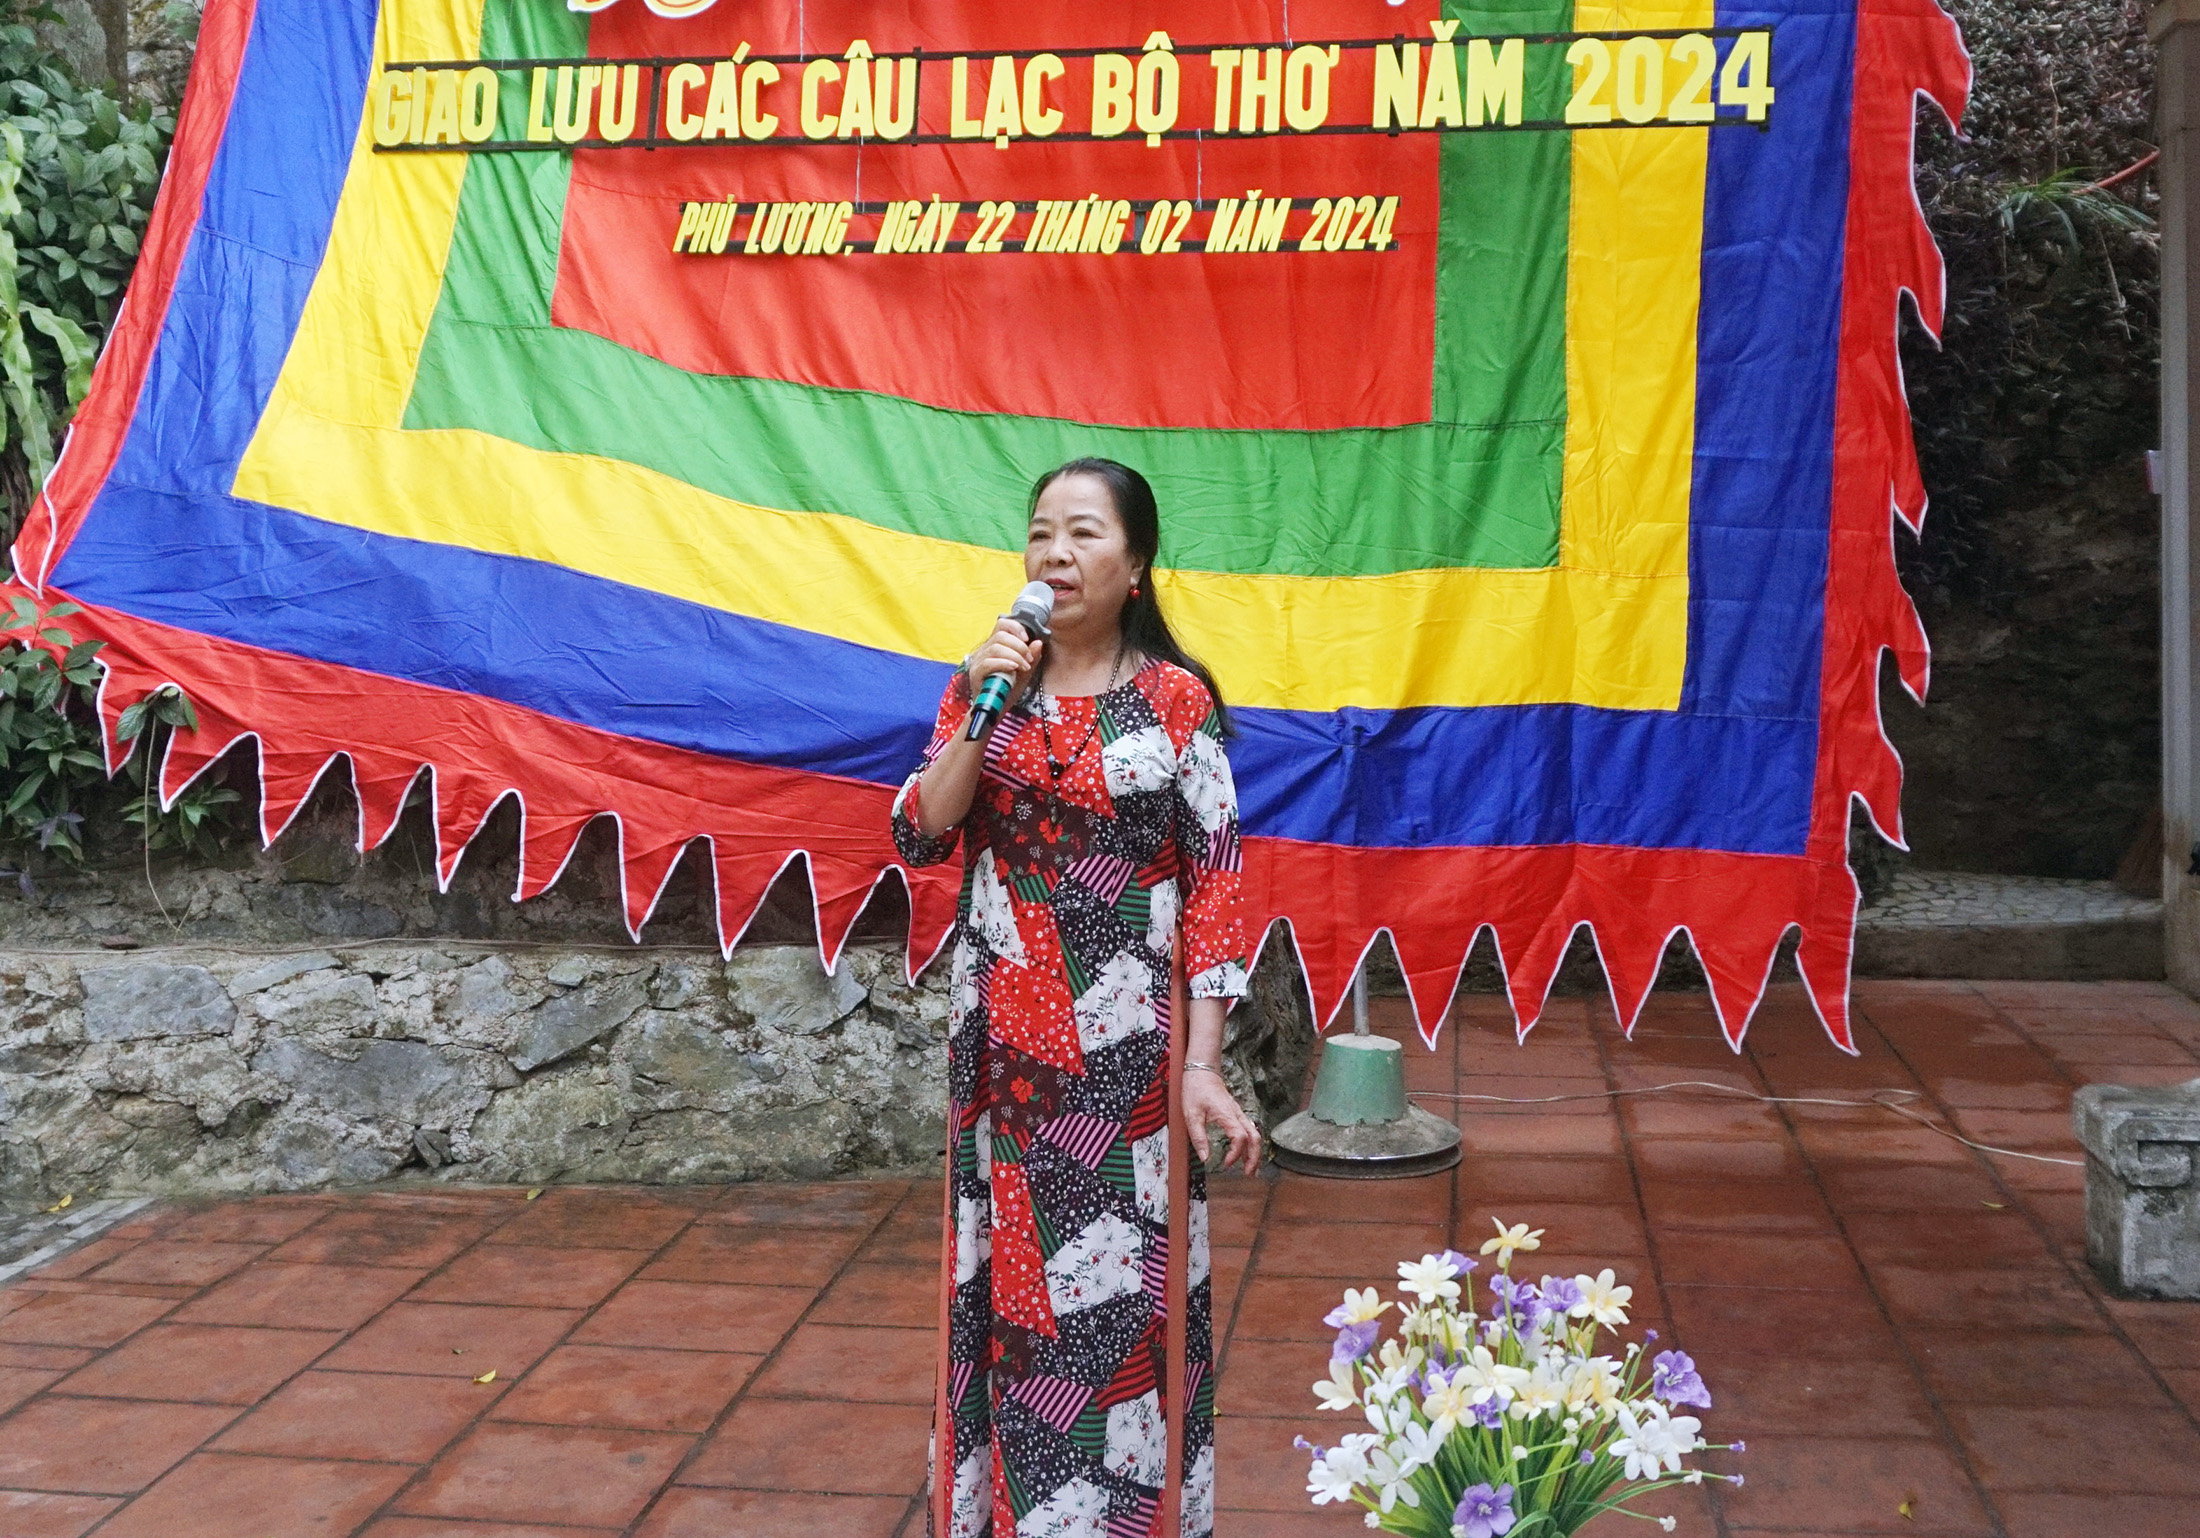 Huyện Phú Lương: Tổ chức Ngày thơ Việt Nam và giao lưu các câu lạc bộ thơ năm 2024